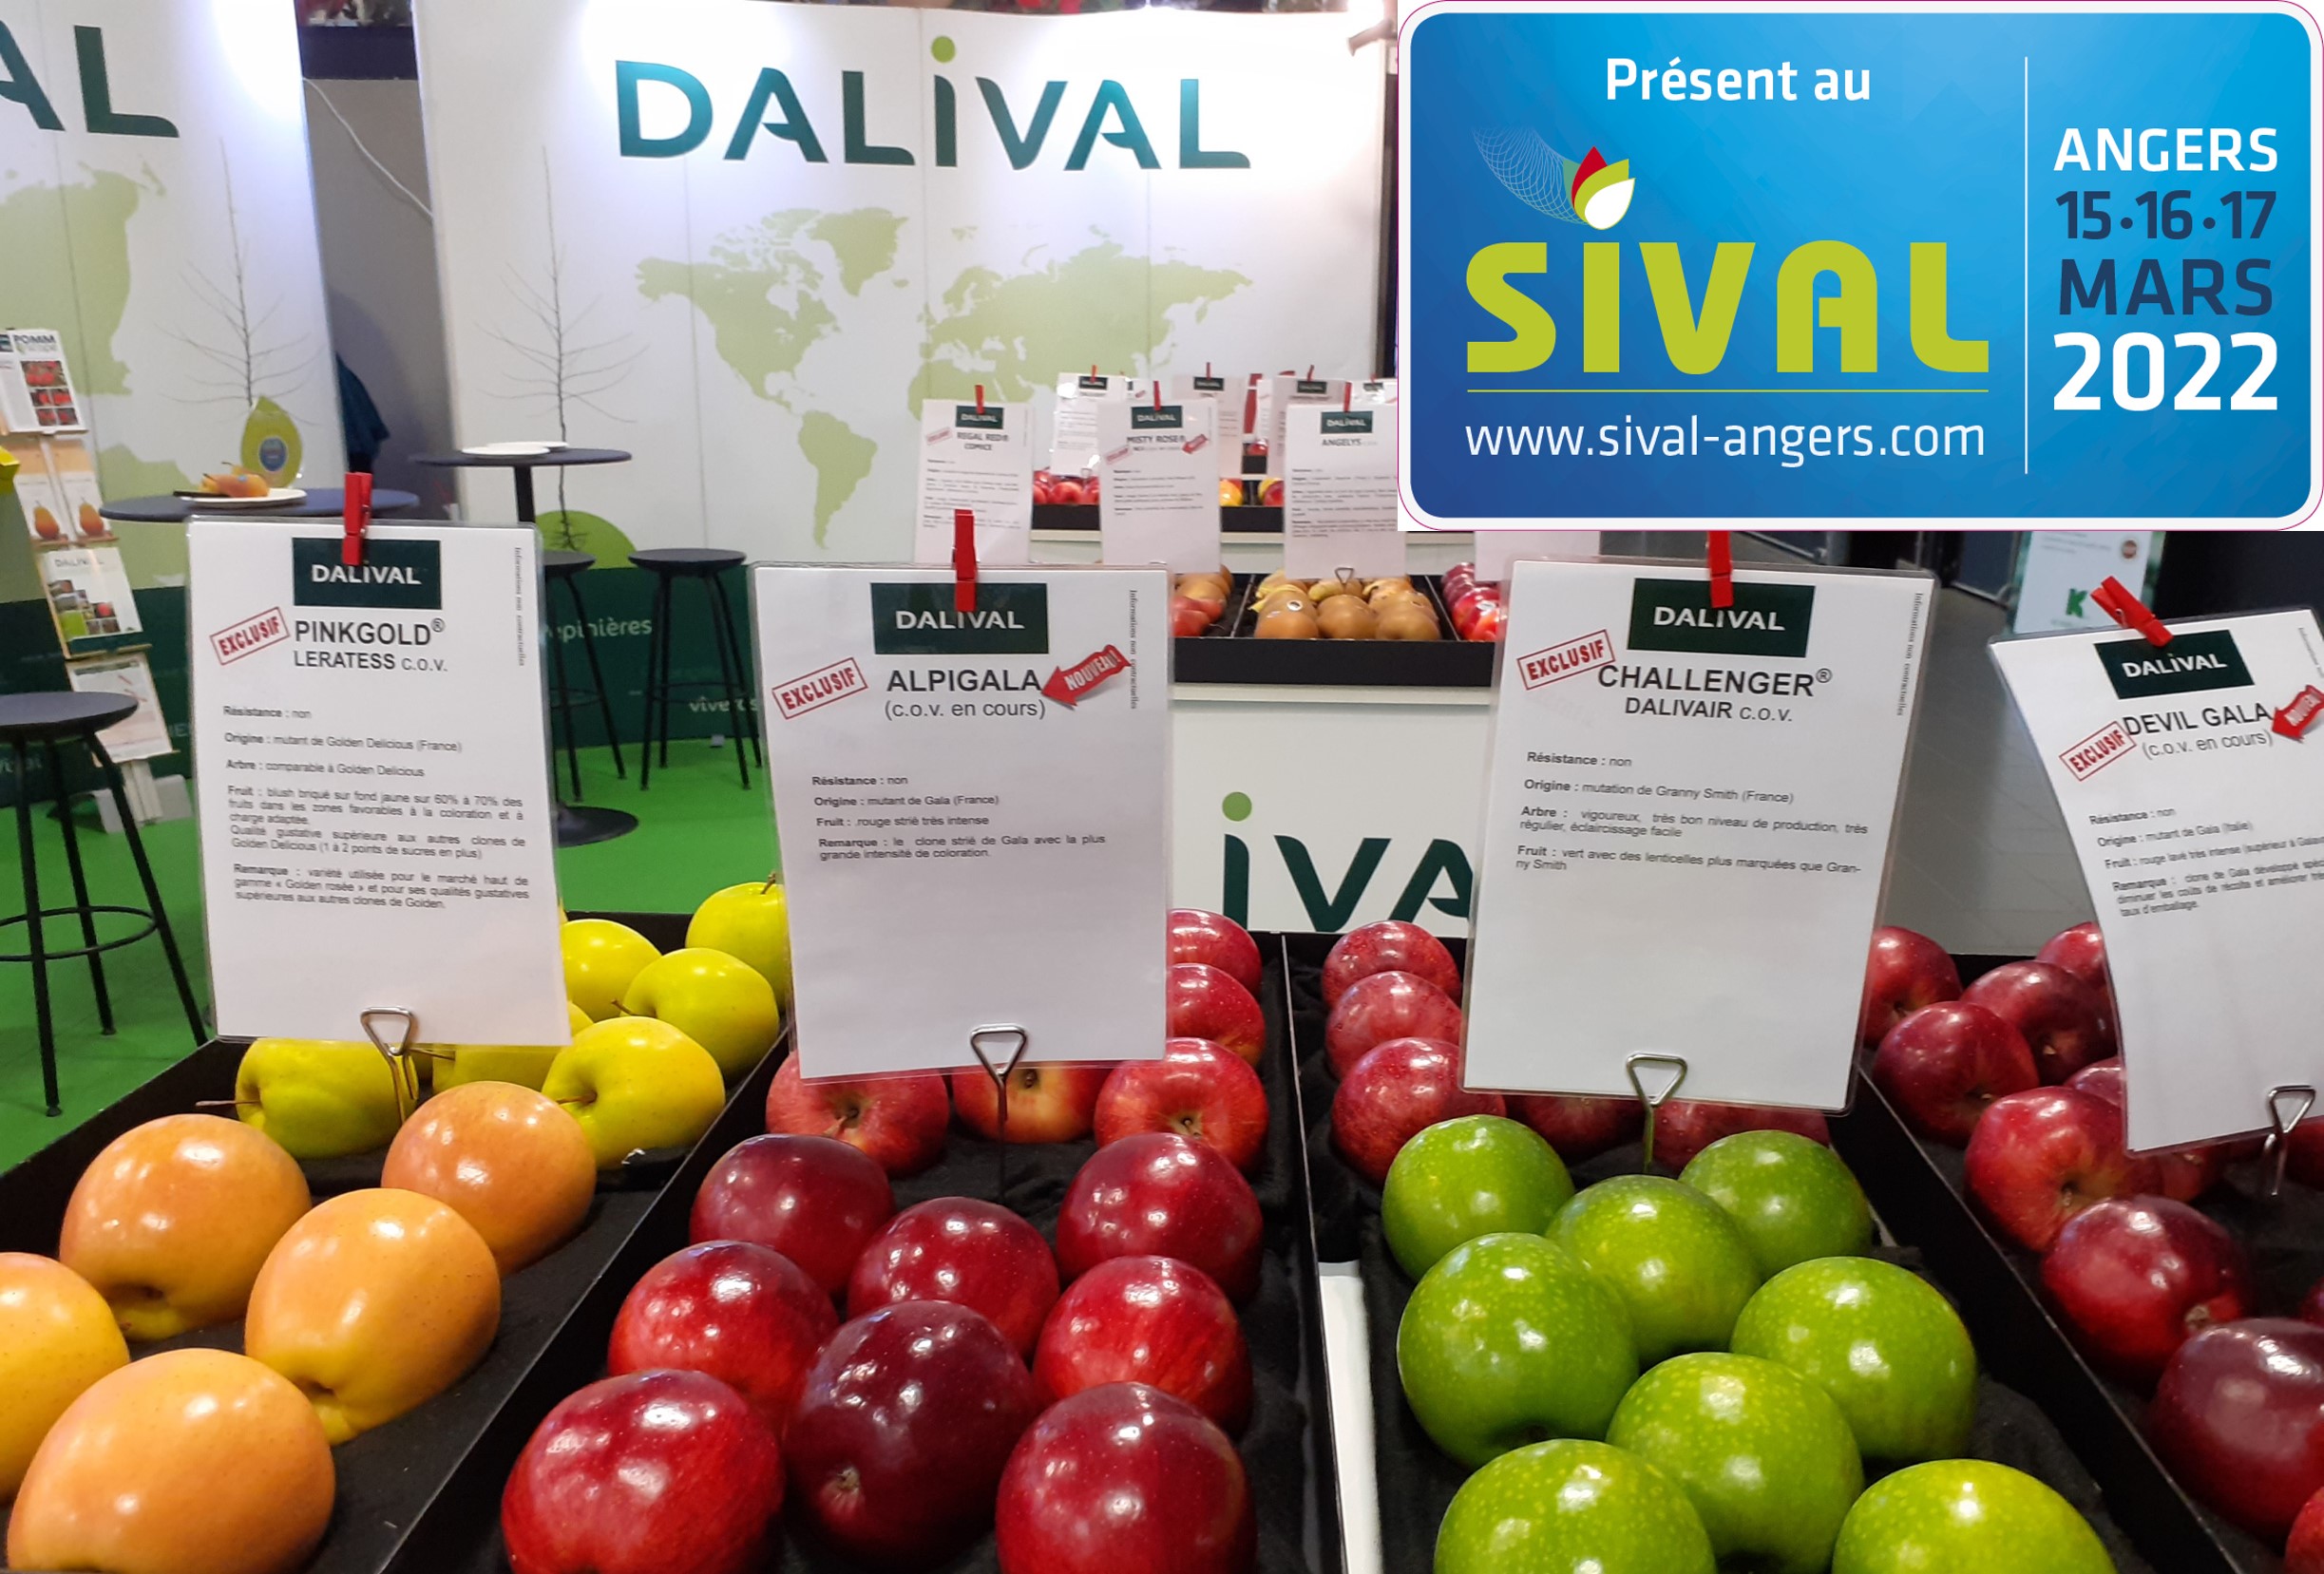 Dalival auf der Messe SIVAL 2022